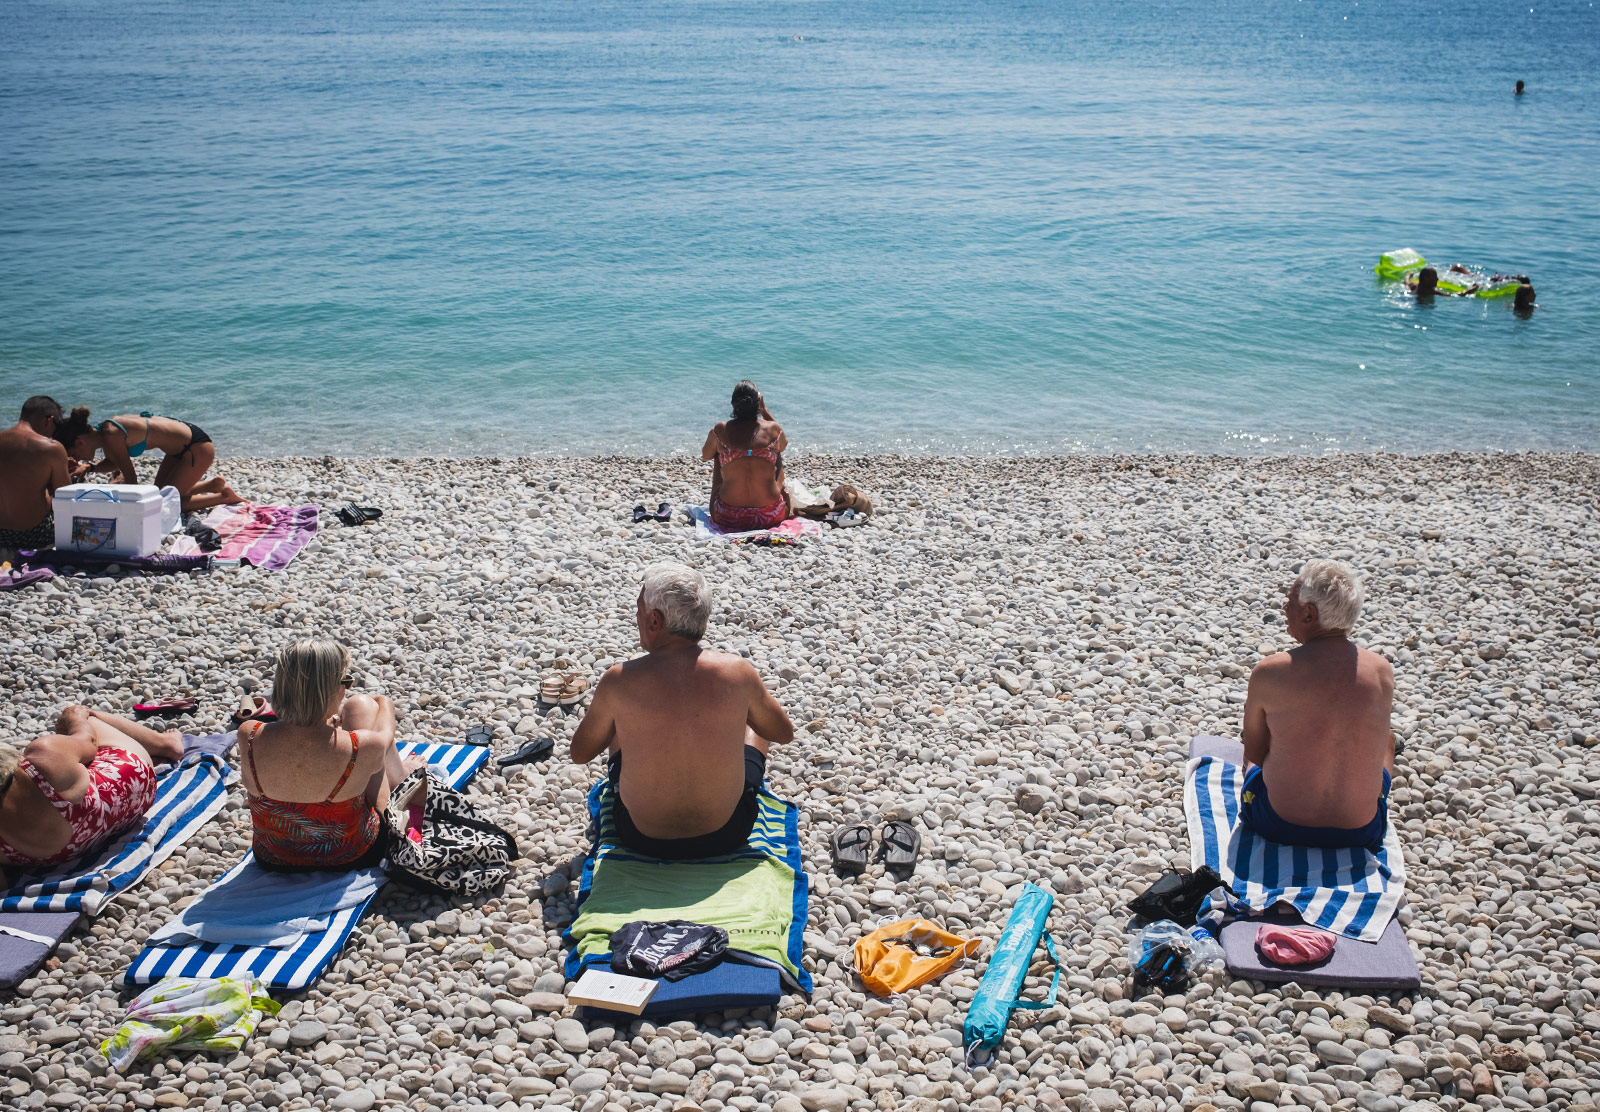 People sunbathing on a pebble beach